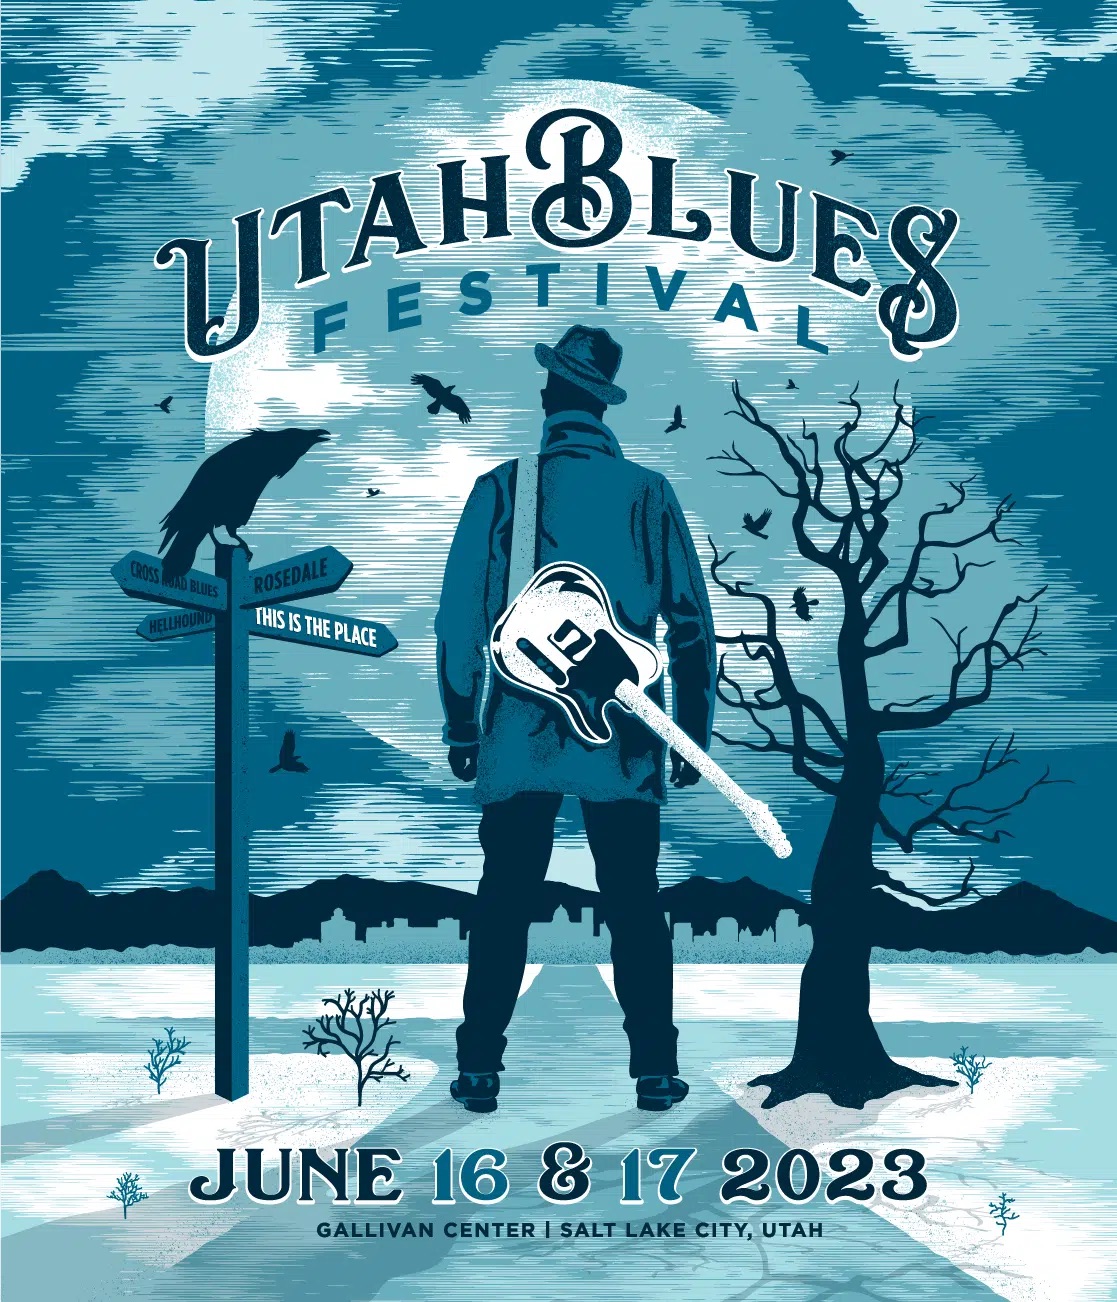 Utah Blues Festival - Day 1